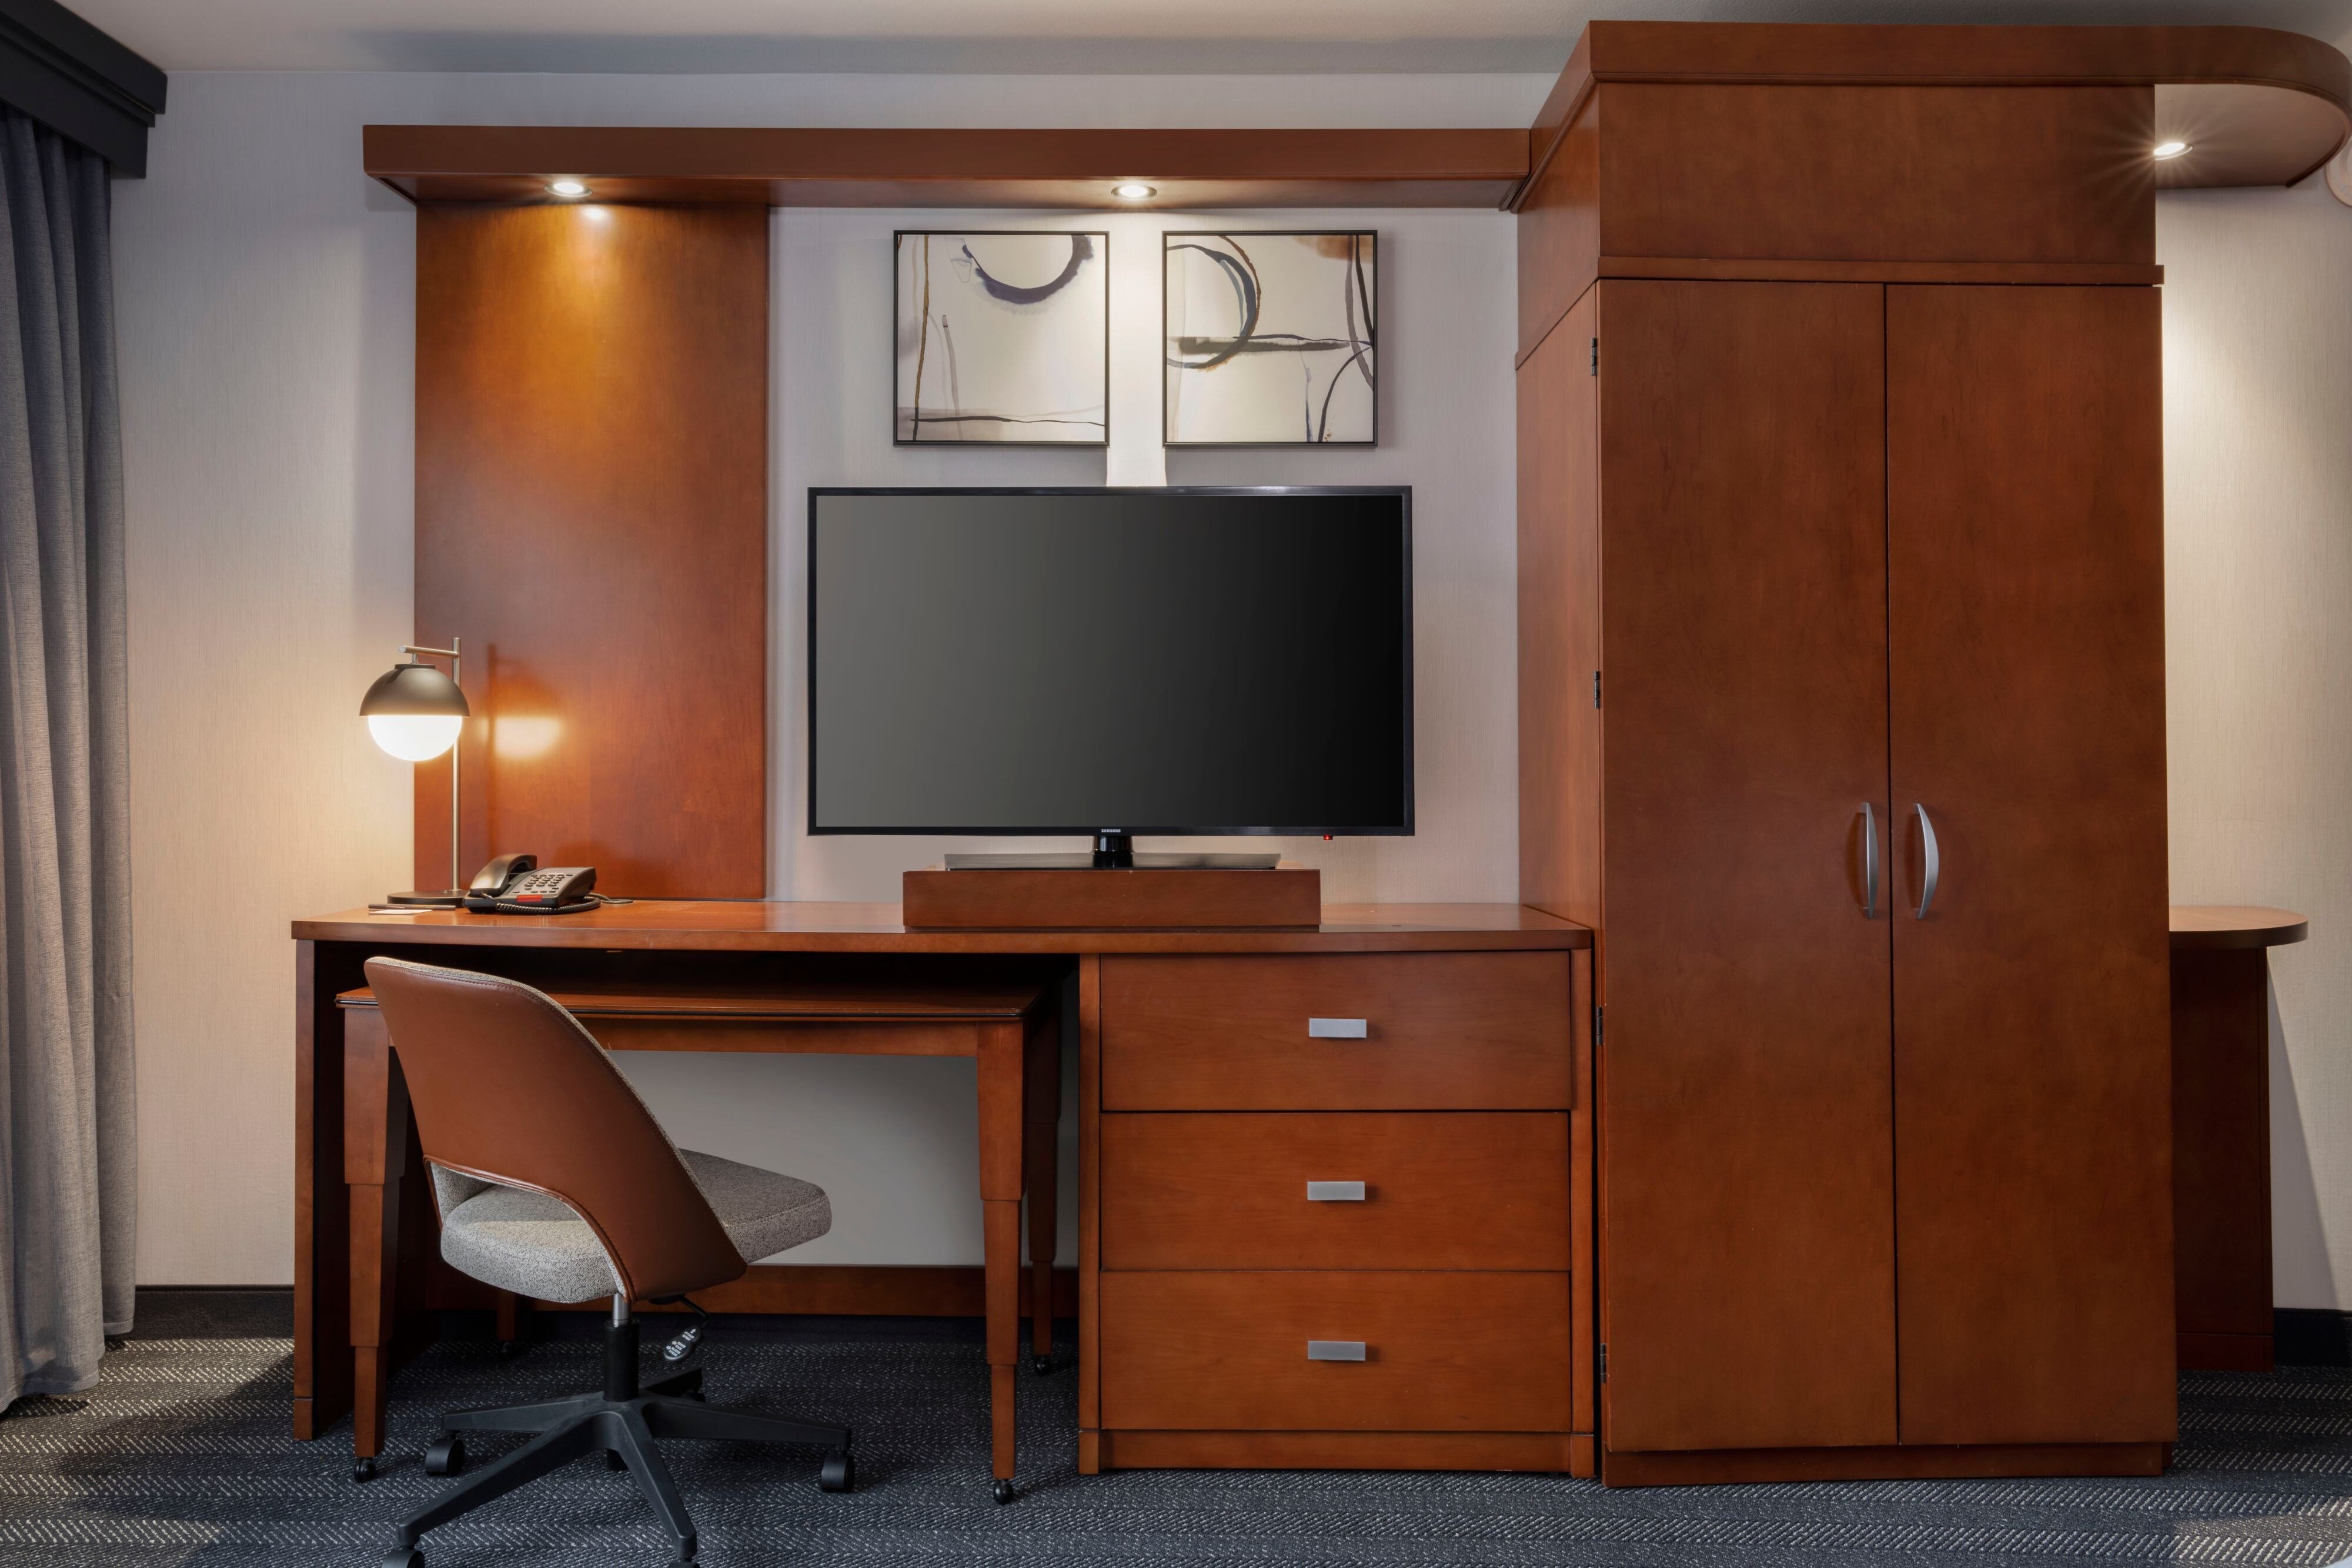 Executive Suite Desk & Television